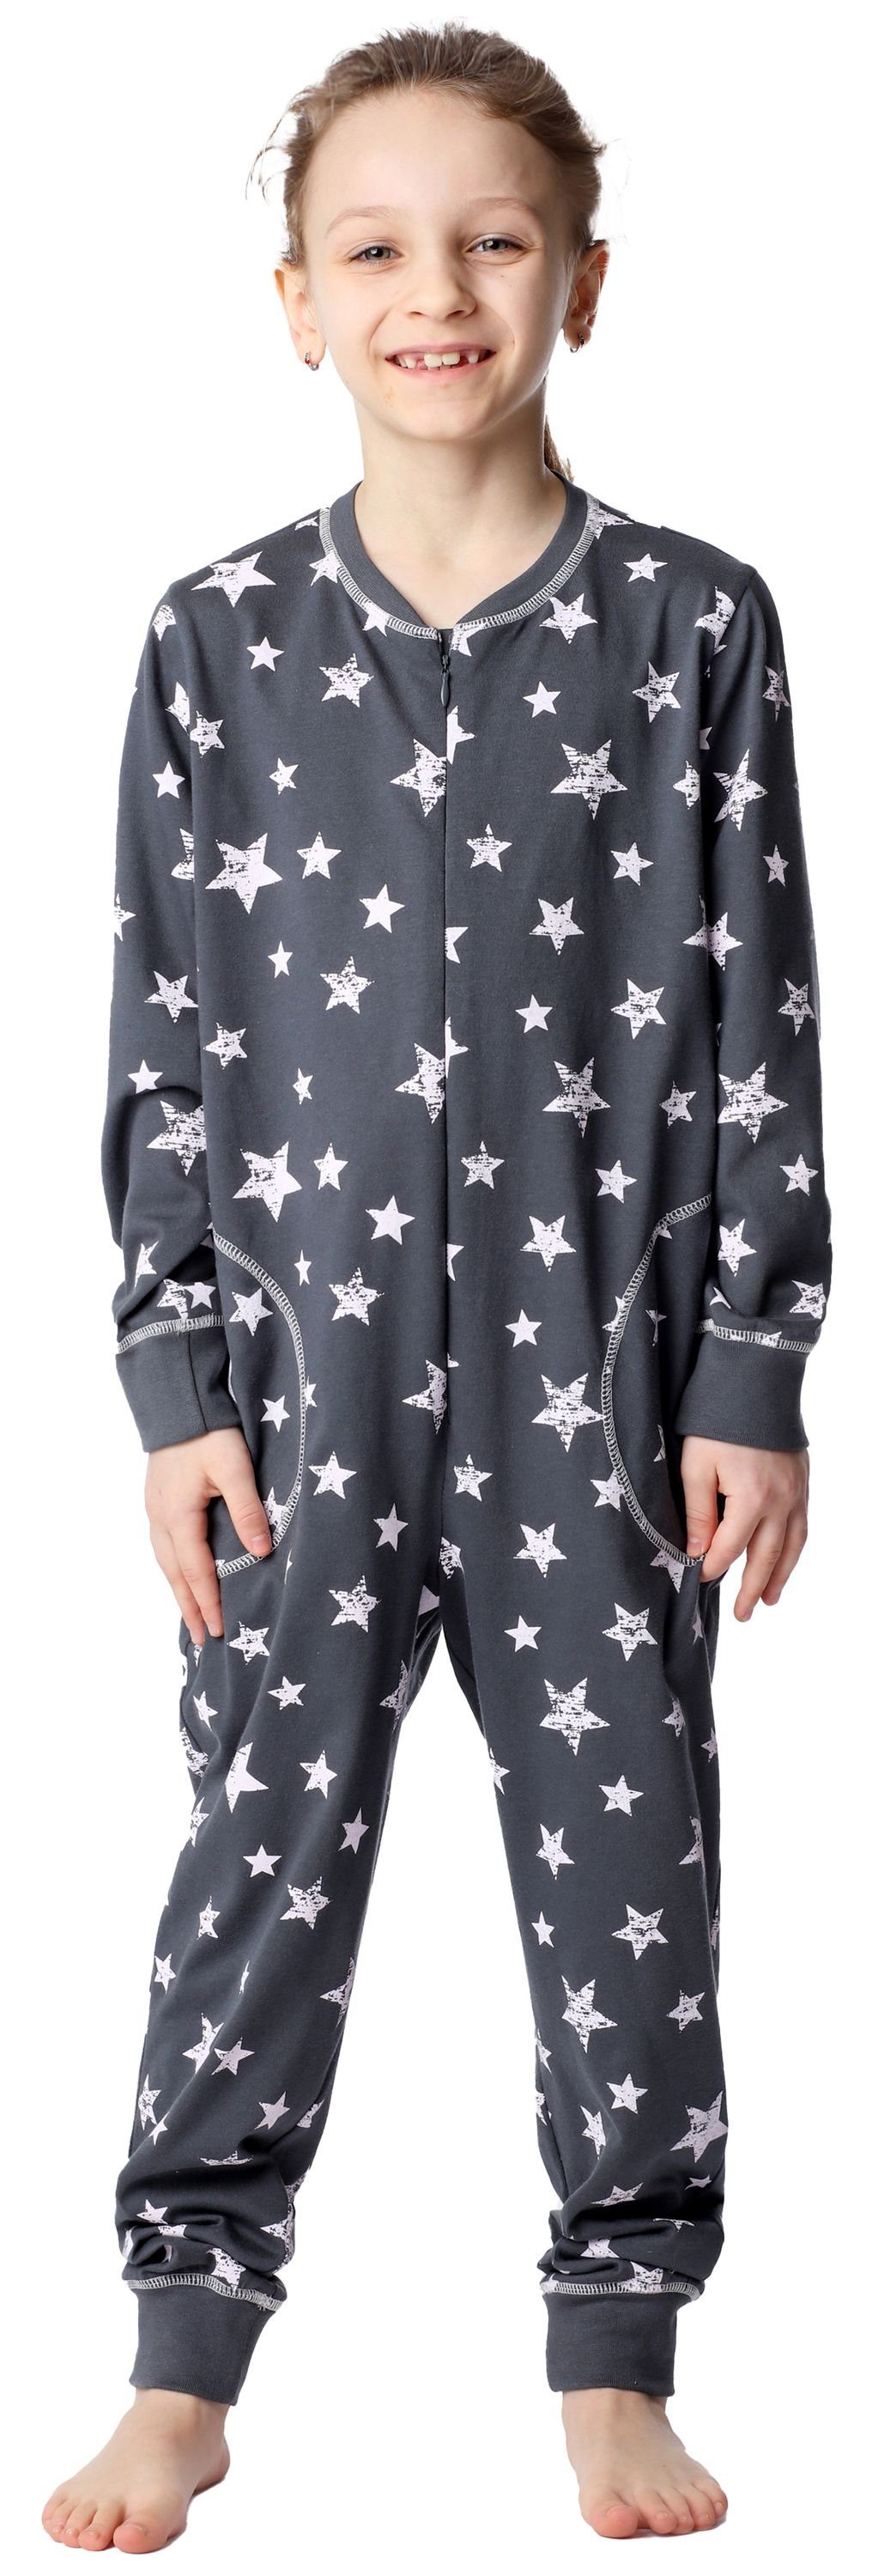 MS10-186 Jumpsuit Schlafanzug Schlafanzug Rosa Grau Style Sterne Merry Mädchen